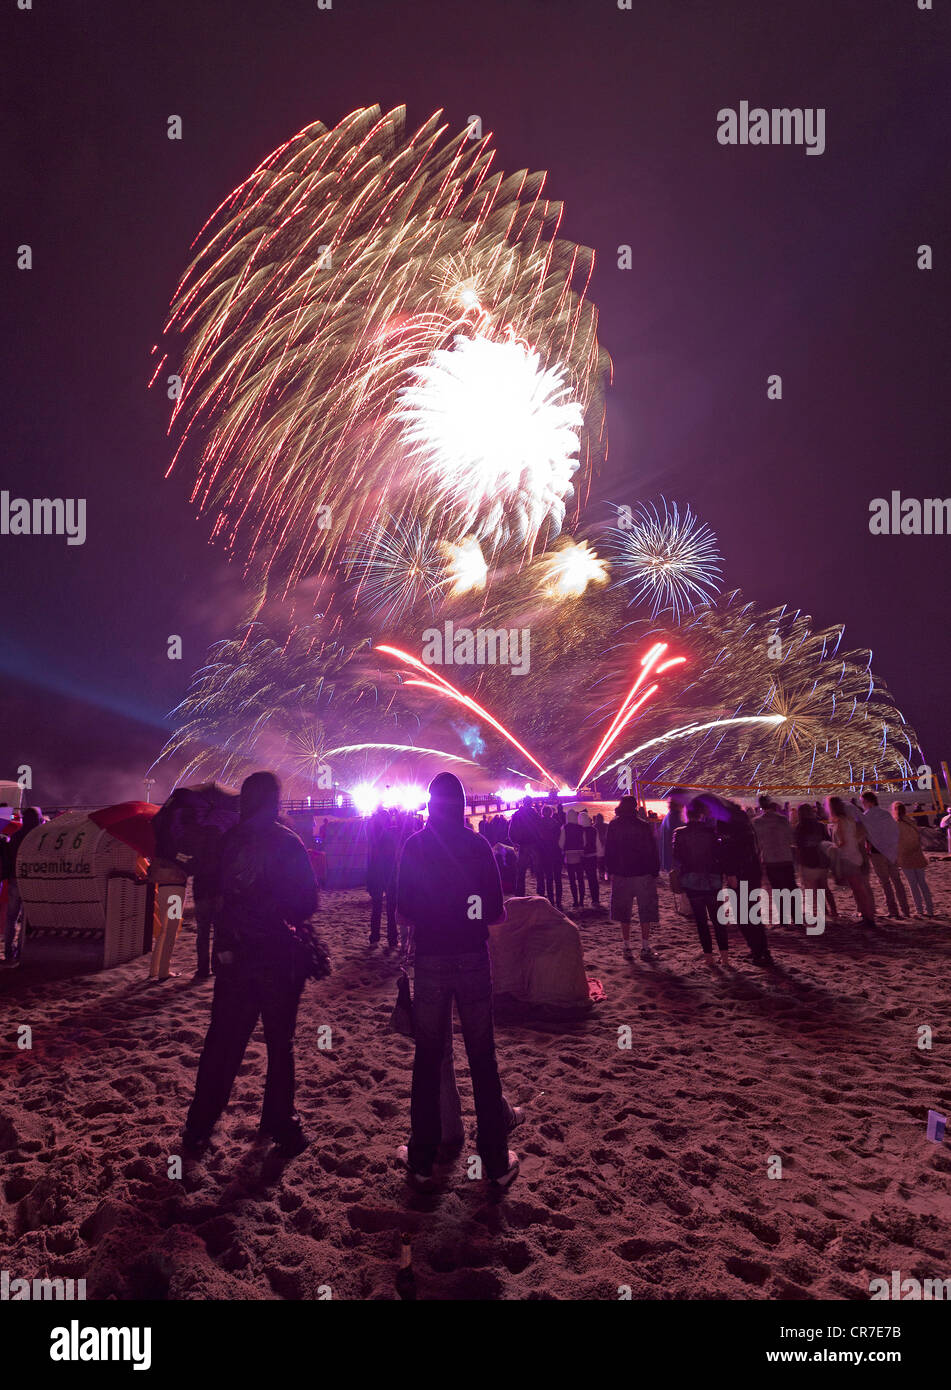 La mer Baltique en flammes, sur Groemitz Pier, feu d'artifice à la fin de la saison, la plage, les spectateurs, la nuit, de la mer Baltique Banque D'Images